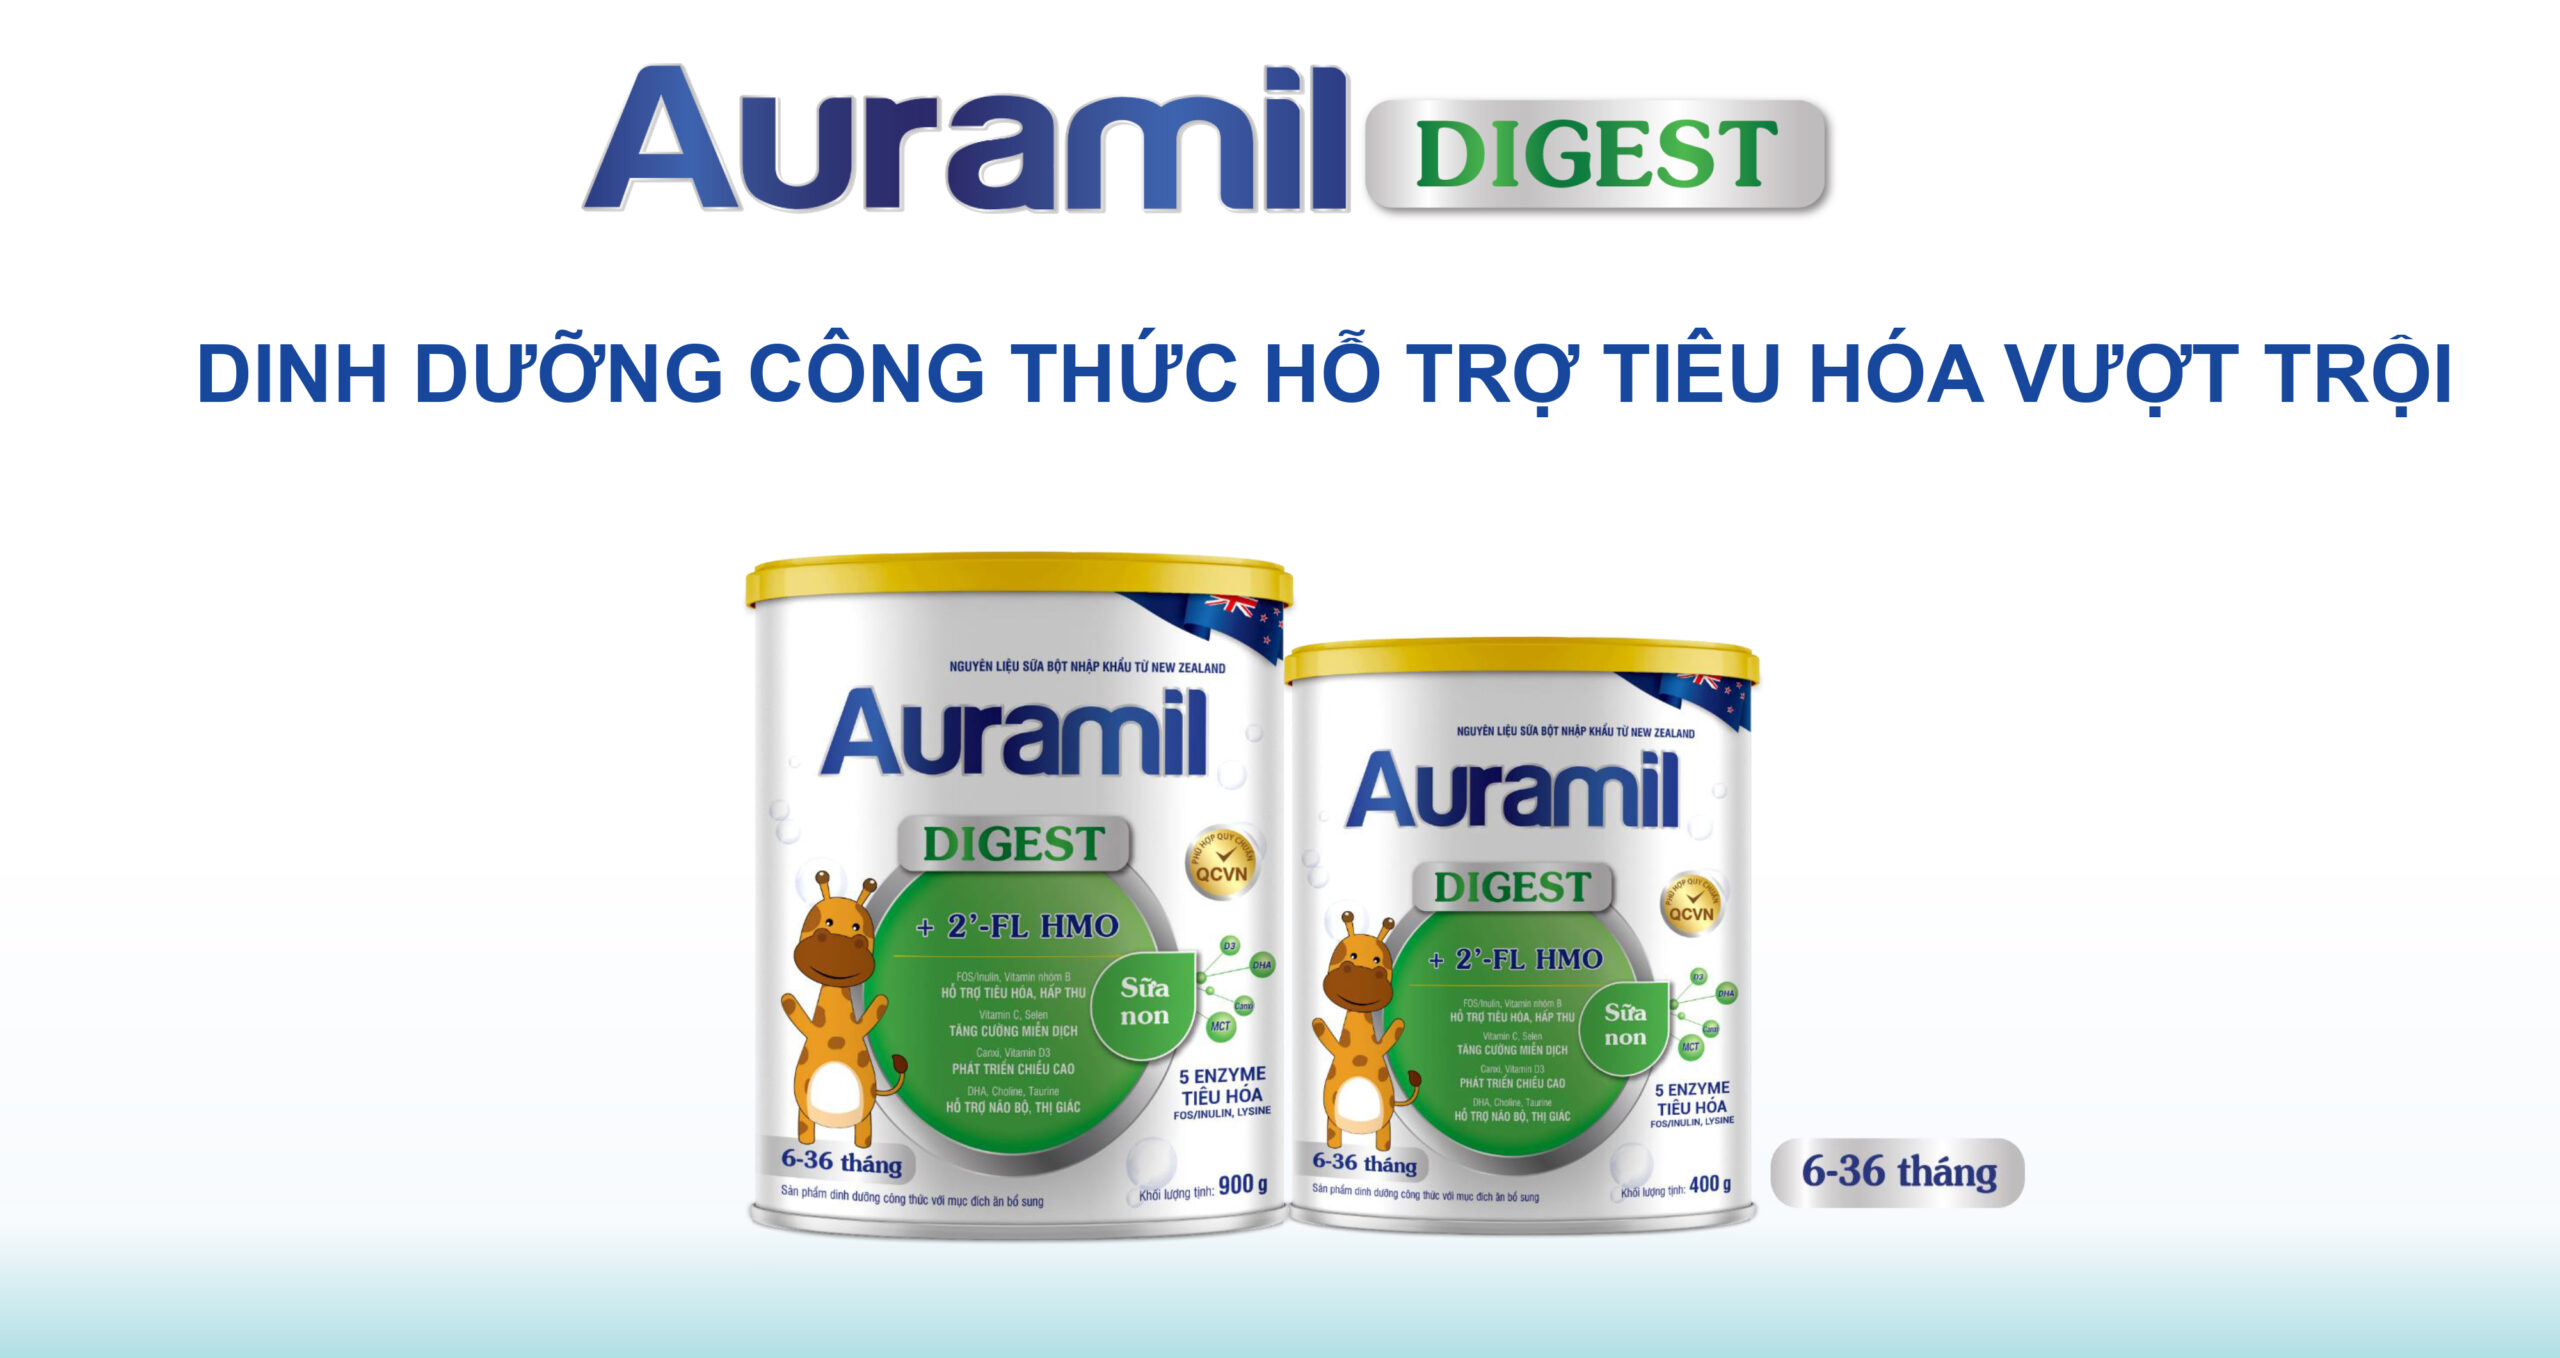 Auramil Degest - Dinh dưỡng công thức hỗ trợ tiêu hóa vượt trội